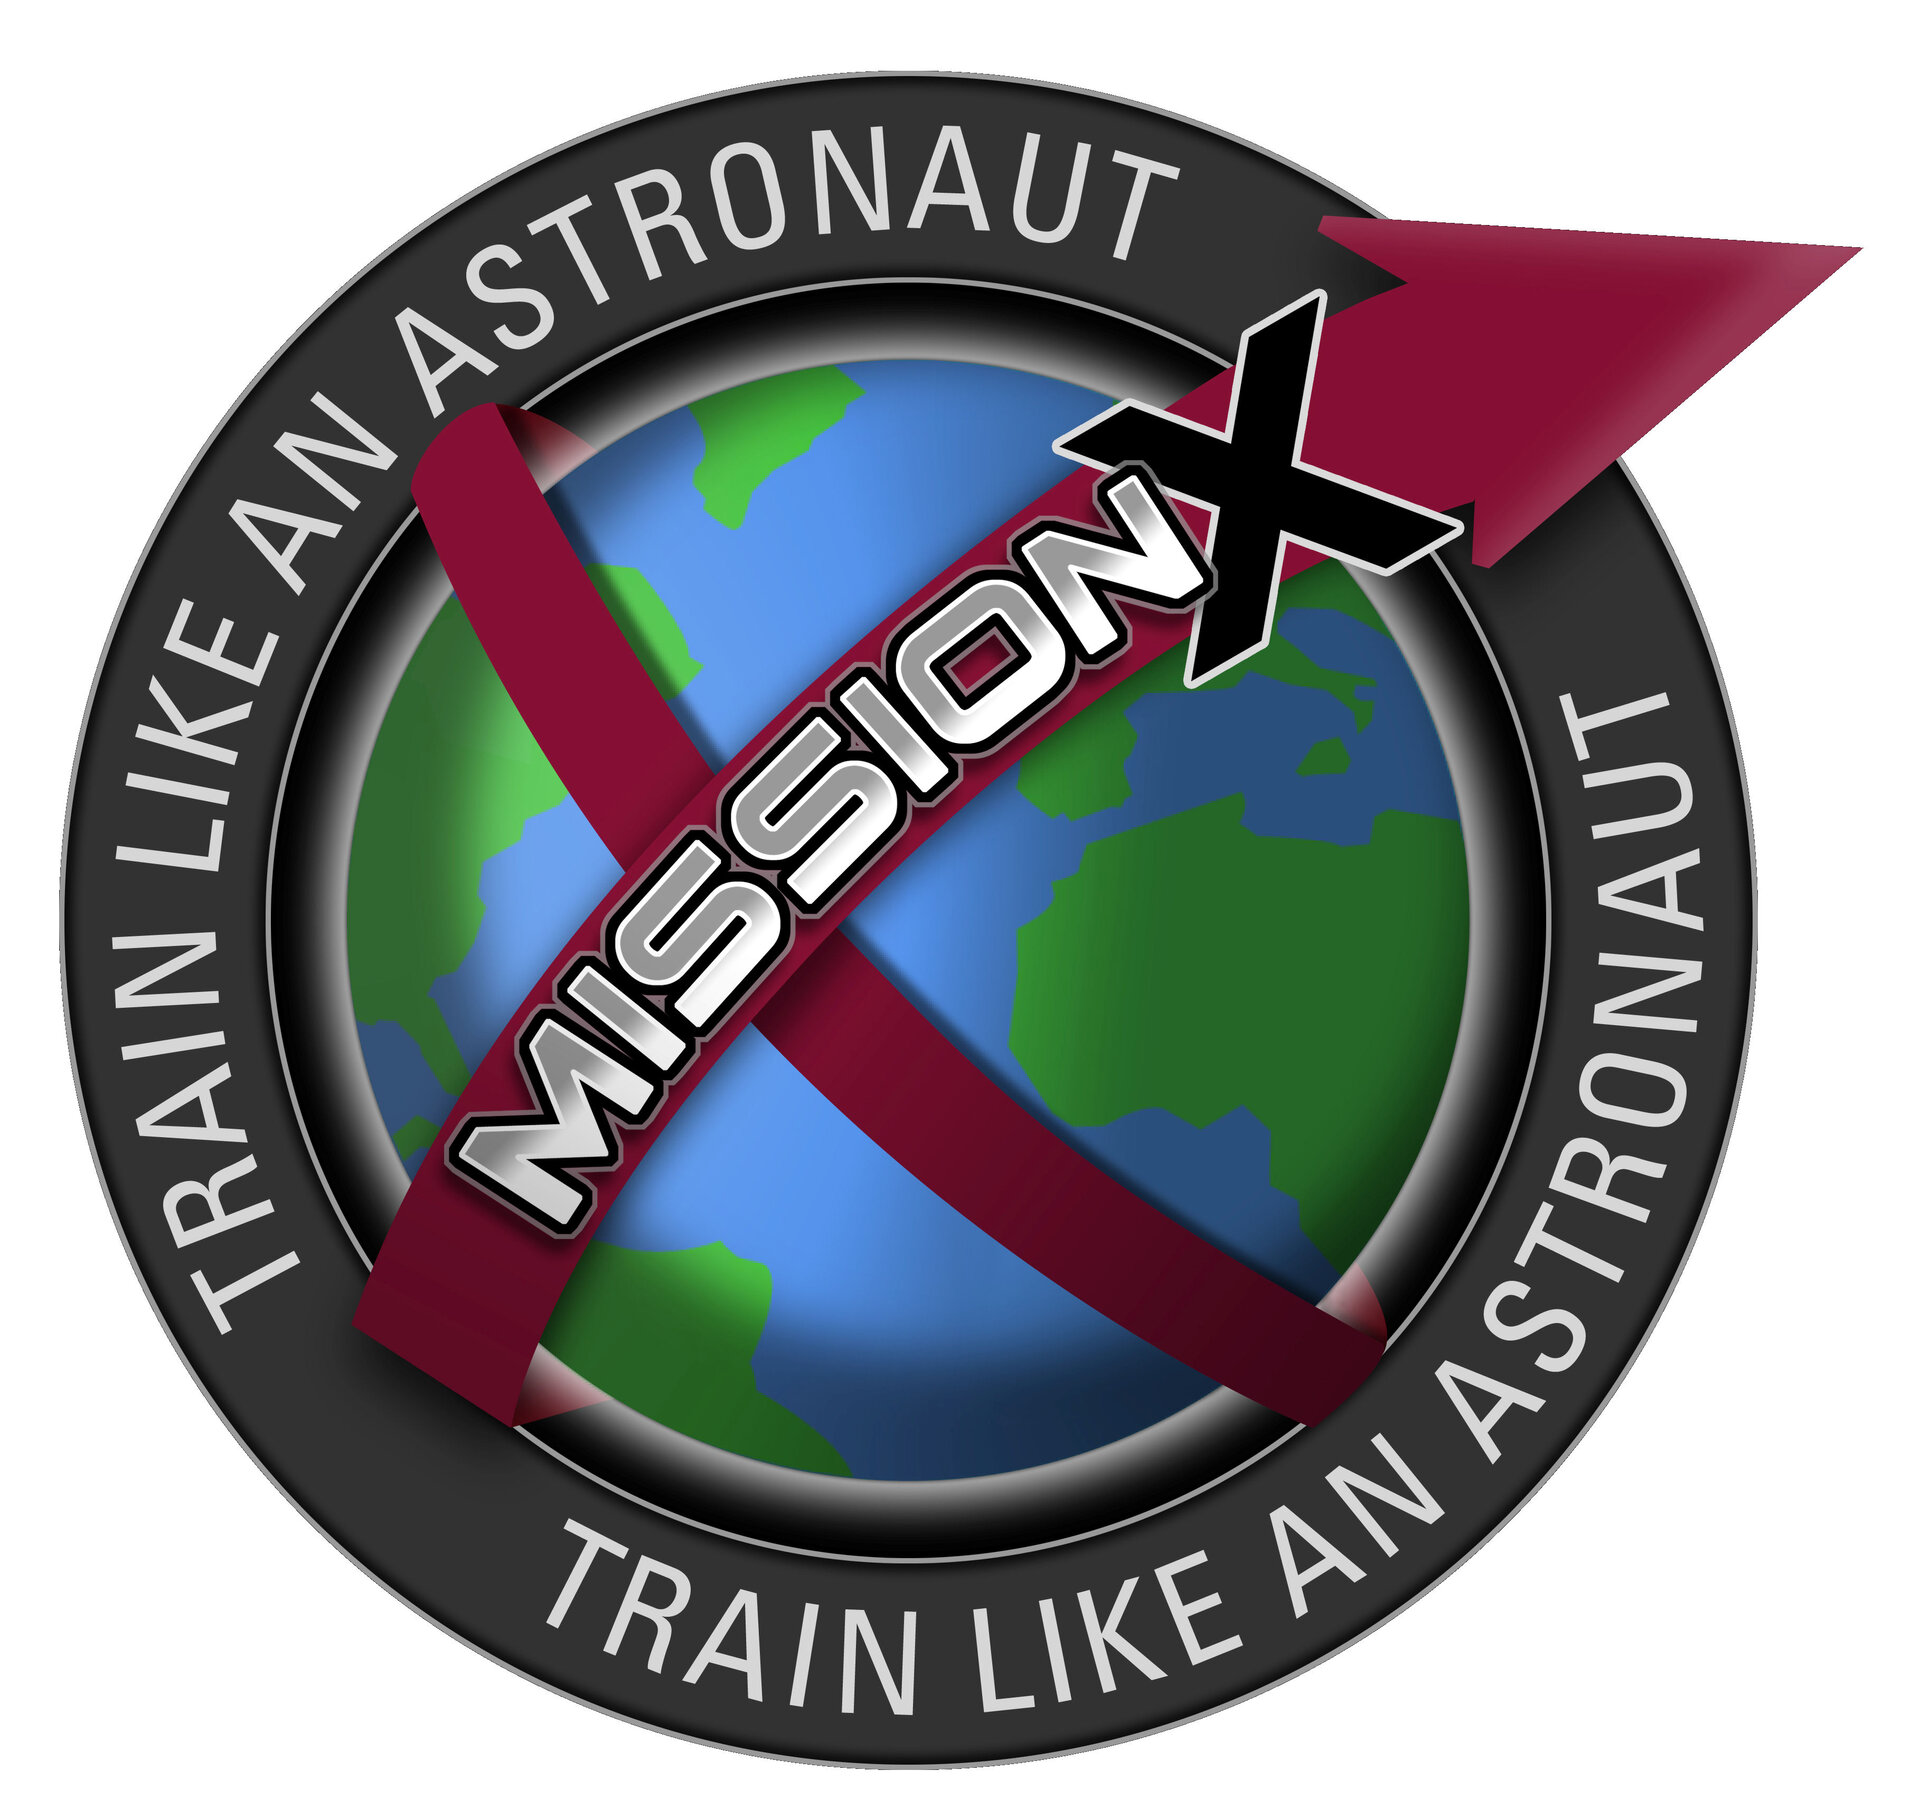 Train als een astronaut!